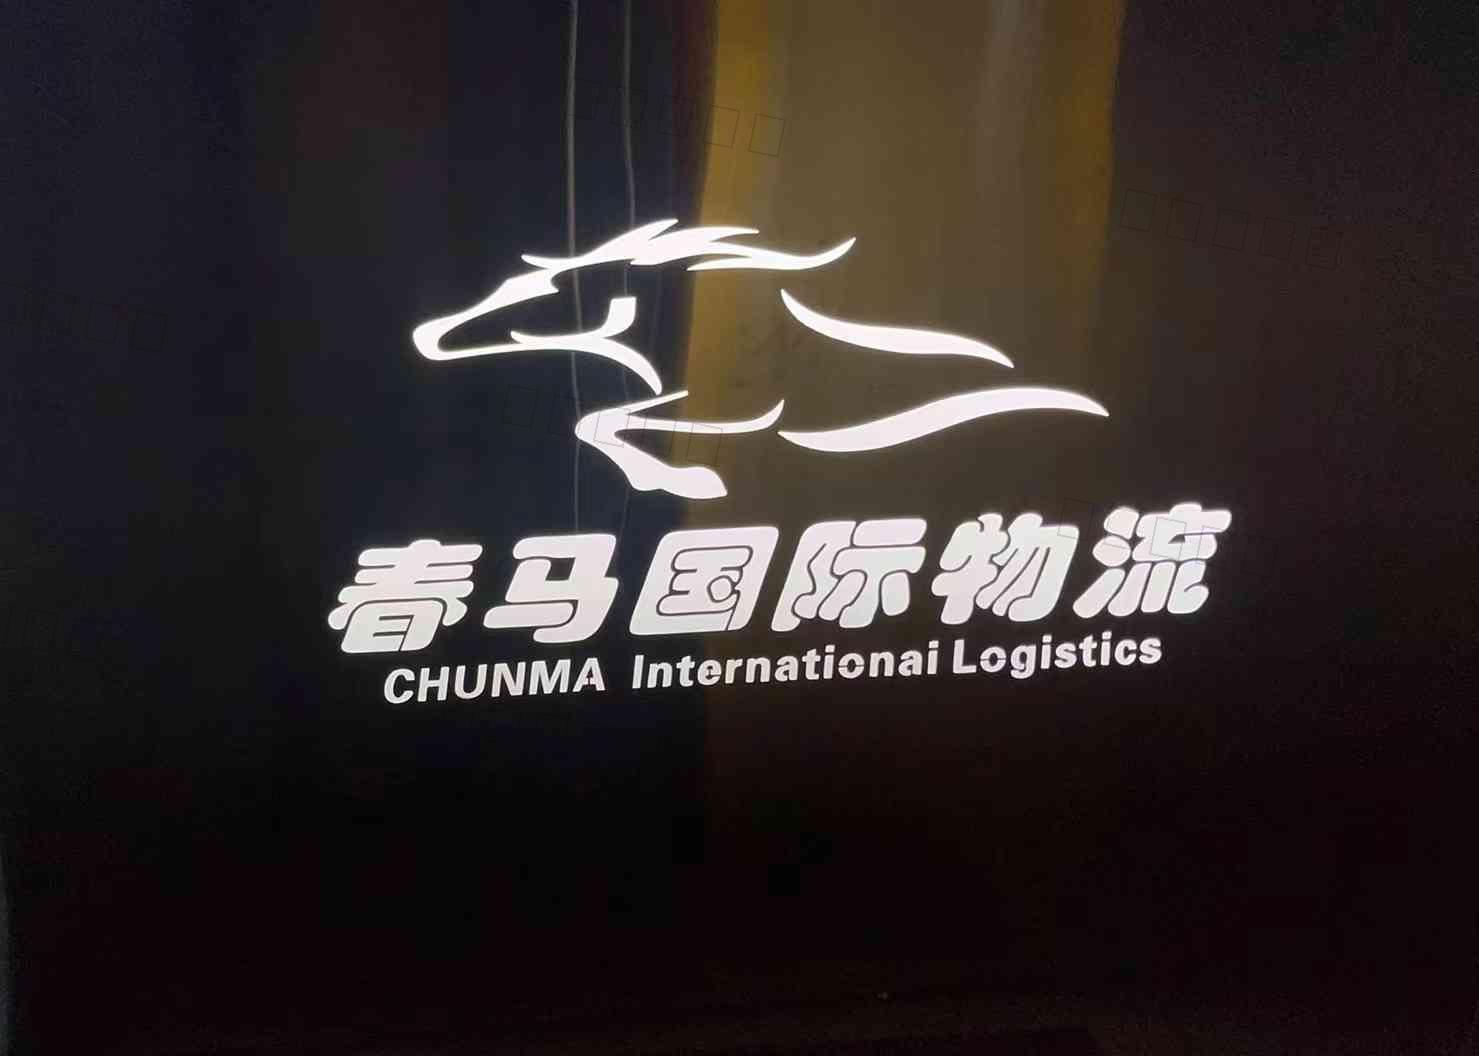 上海春马国际物流有限公司